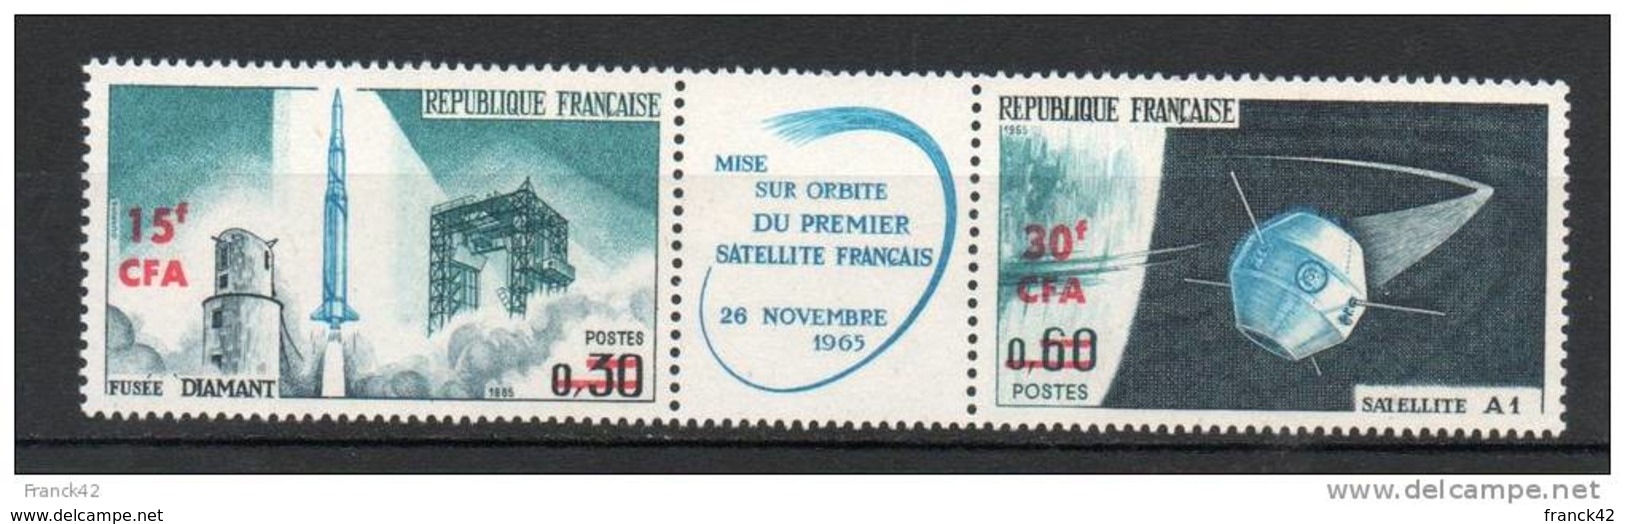 Reunion. Poste Aérienne. Mise En Orbite Du Premier Satellite Français - Airmail